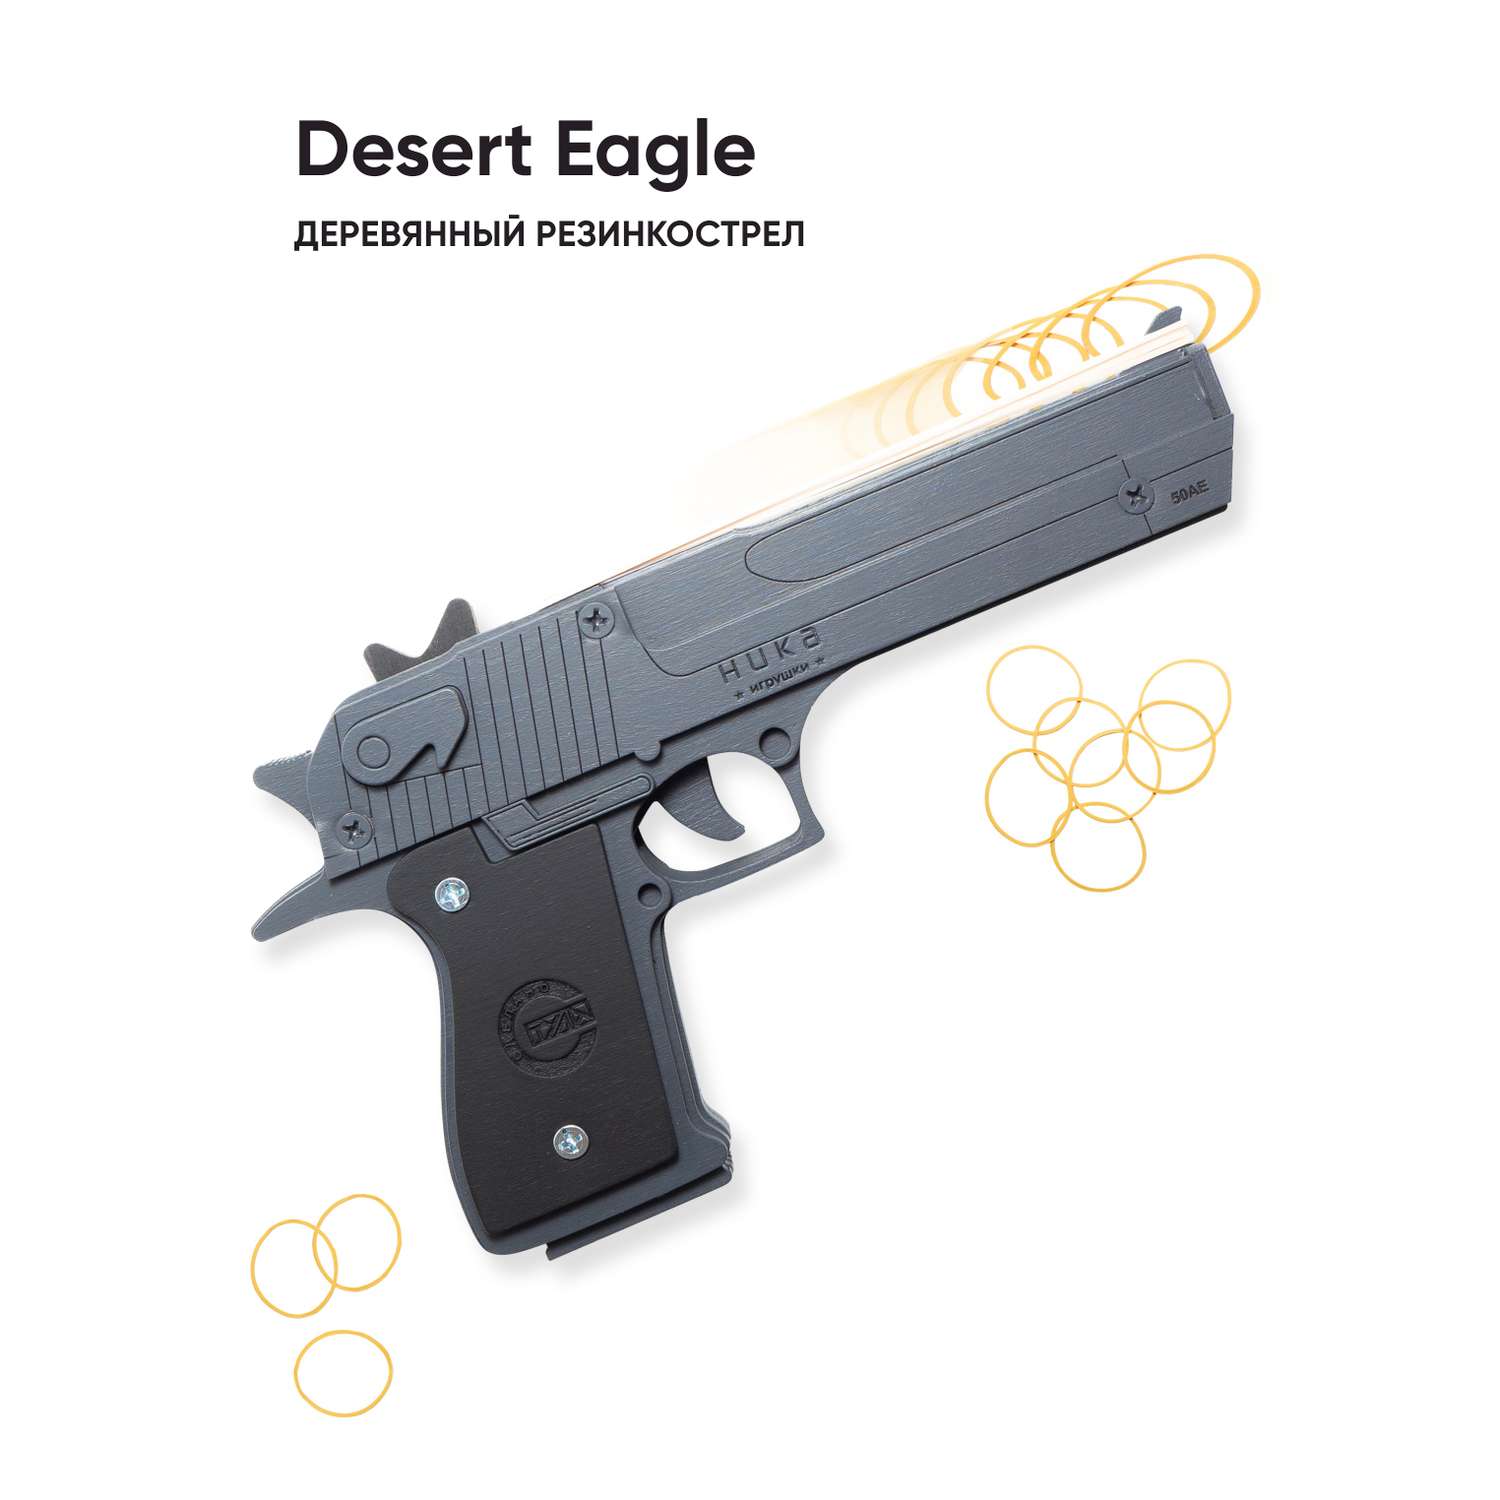 Резинкострел НИКА игрушки Пистолет Desert Eagle Серый в подарочной упаковке - фото 1